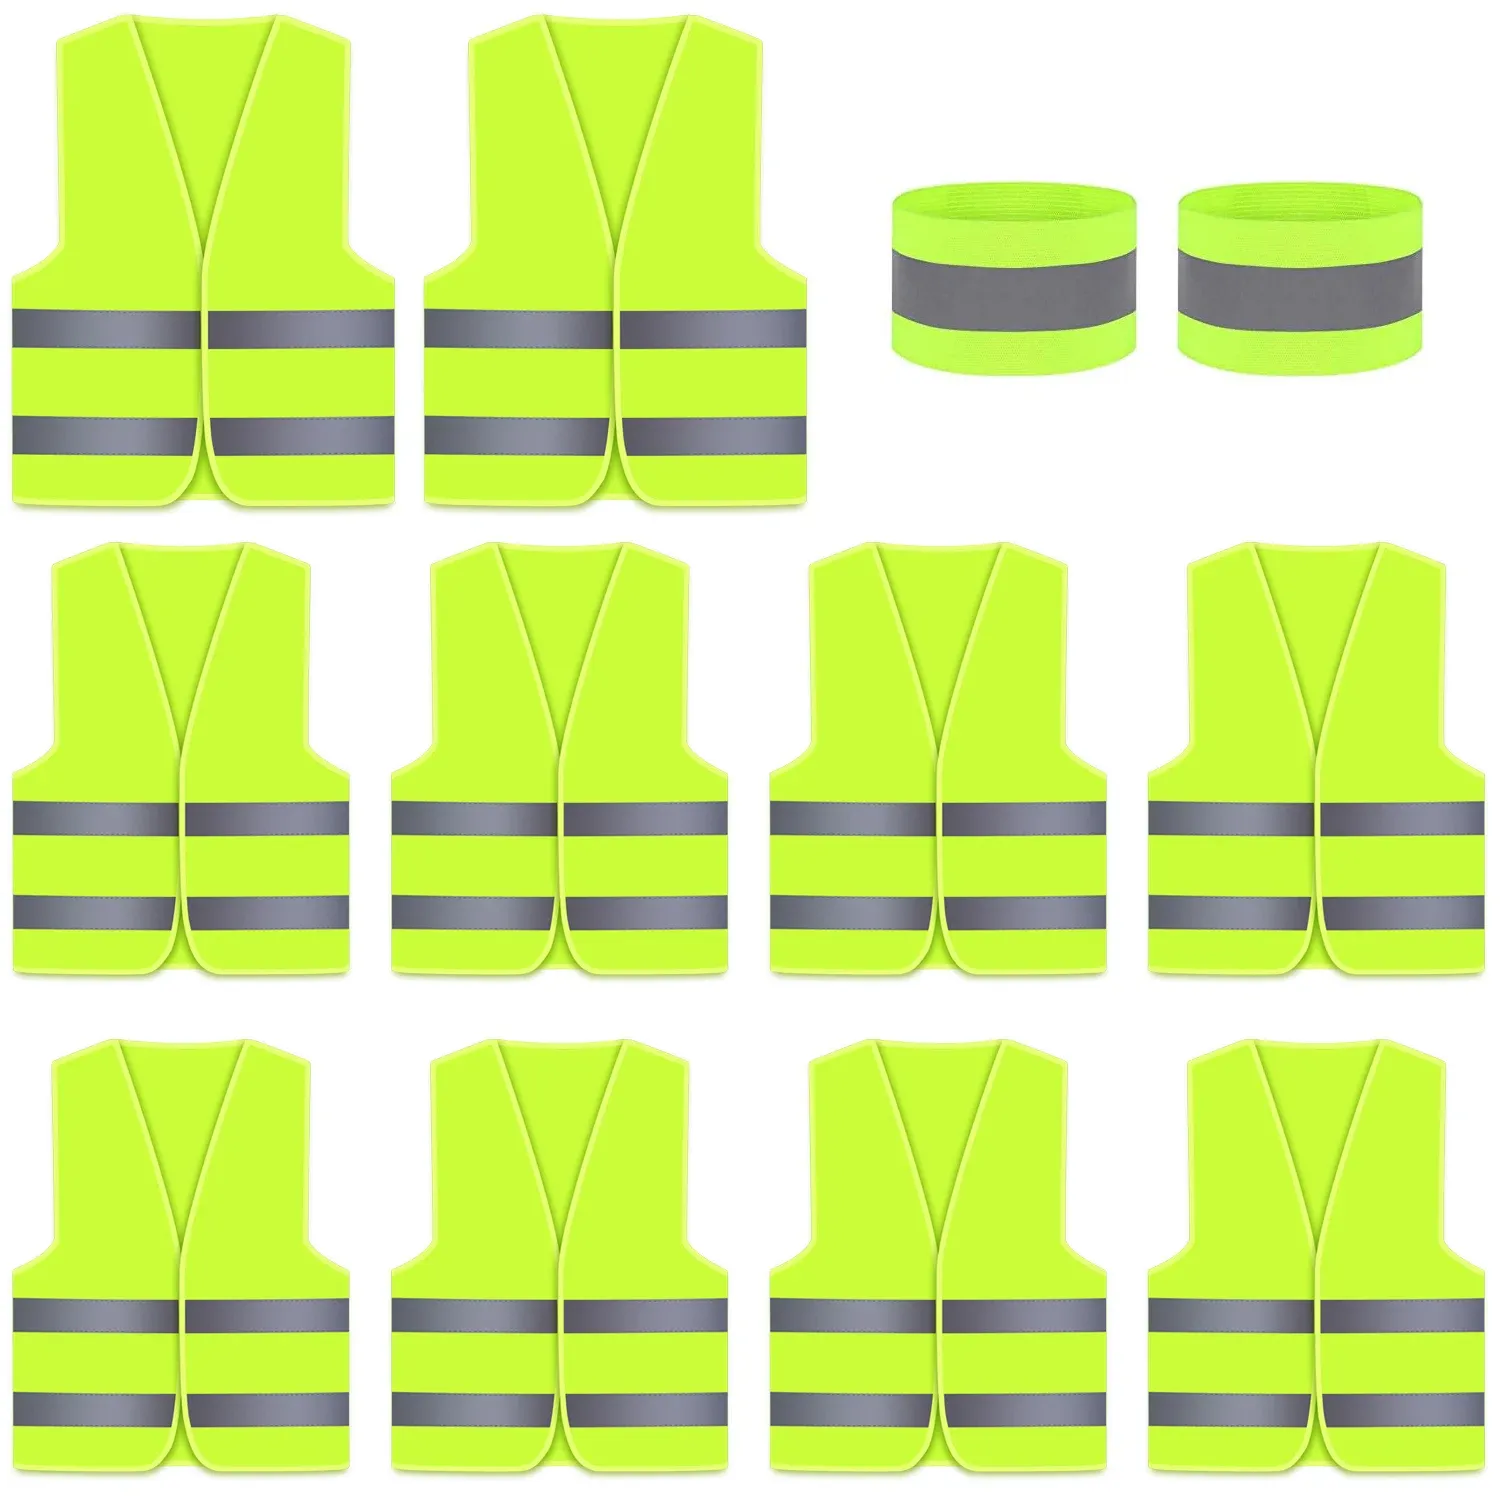 Mattor 10 förpackningar HI Vis Reflective Vest, Säkerhetsvästar med hög synlighet för män, kvinnor, Neon Yellow/Green Color